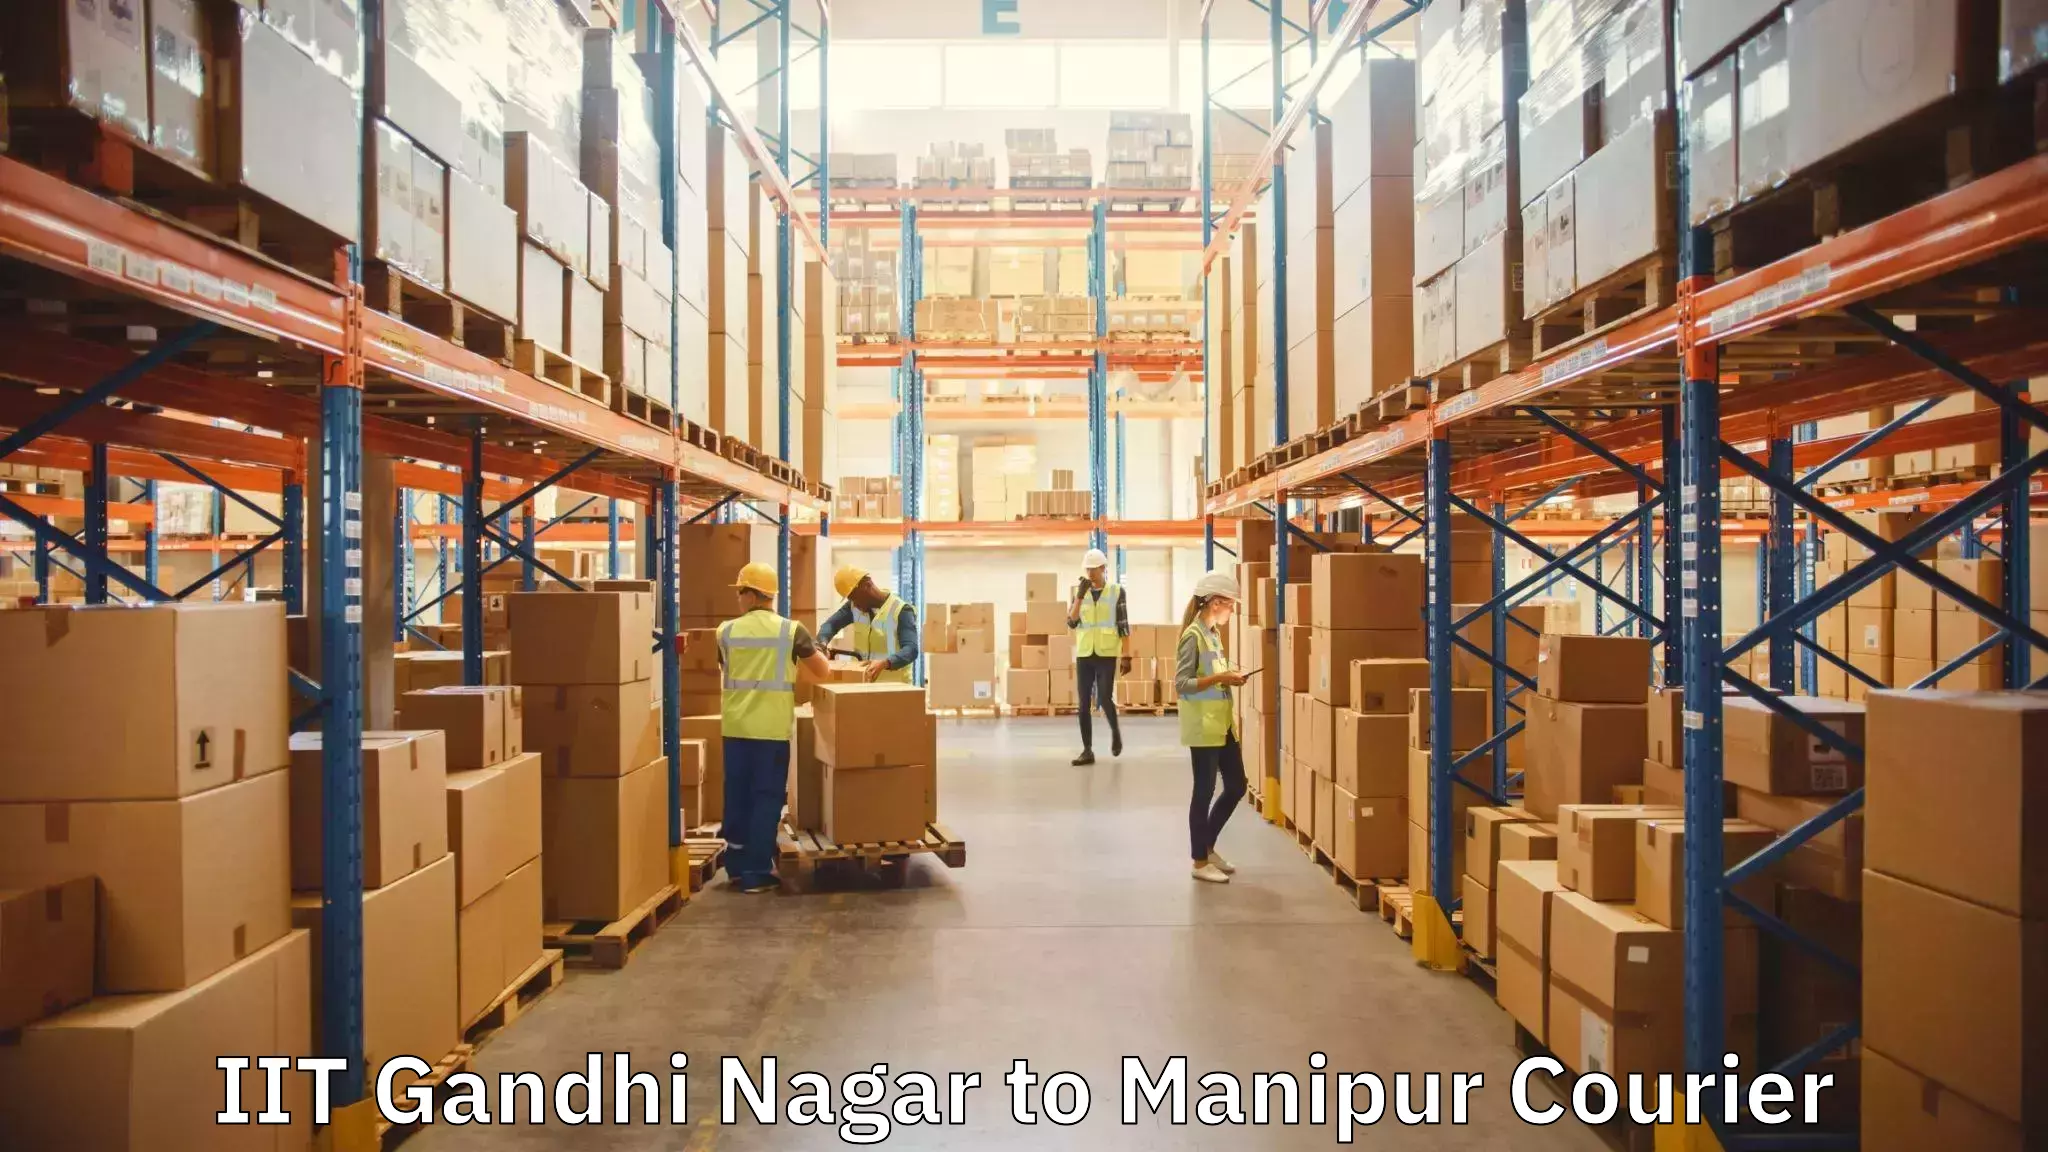 Furniture moving services IIT Gandhi Nagar to Manipur